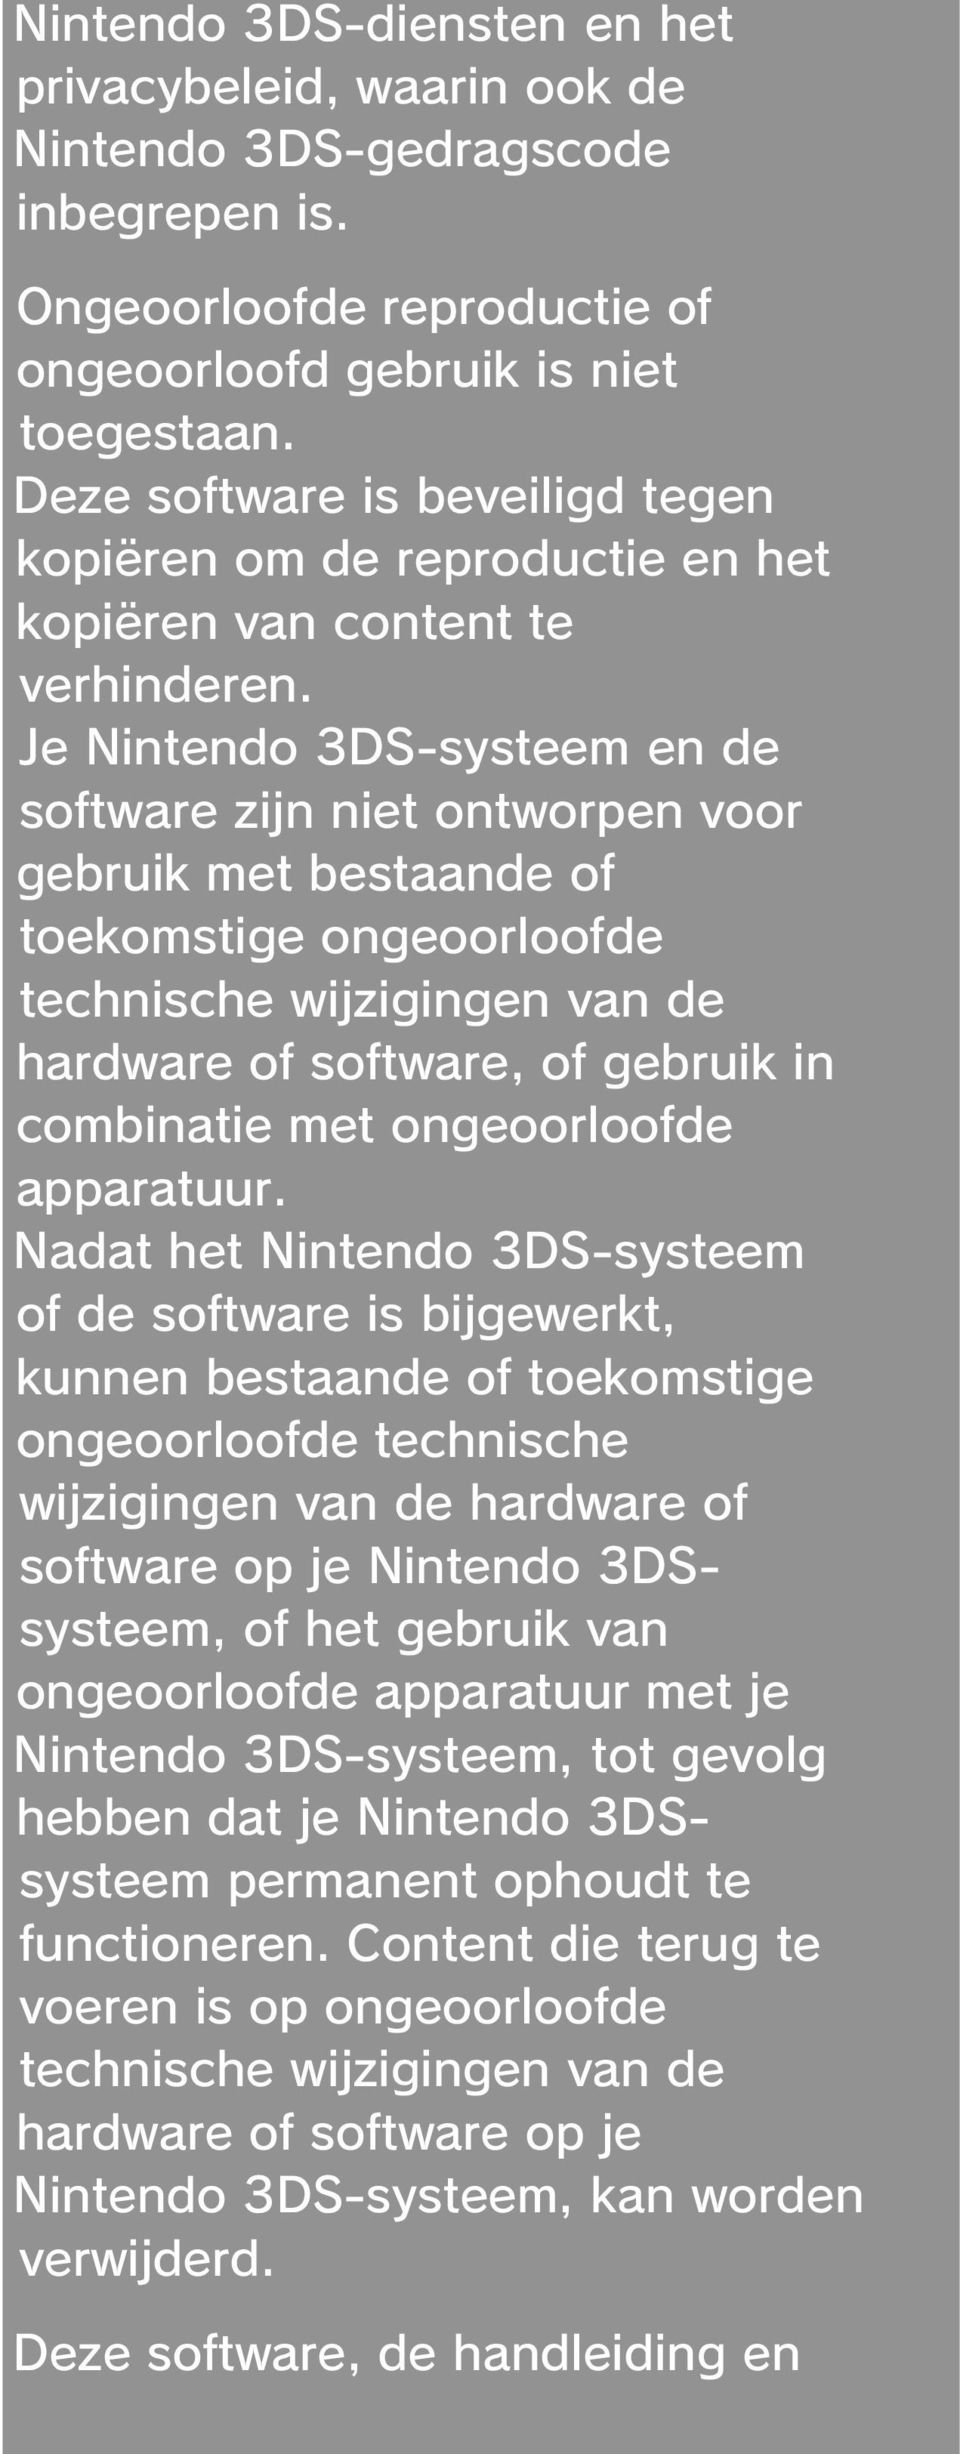 Je Nintendo 3DS-systeem en de software zijn niet ontworpen voor gebruik met bestaande of toekomstige ongeoorloofde technische wijzigingen van de hardware of software, of gebruik in combinatie met